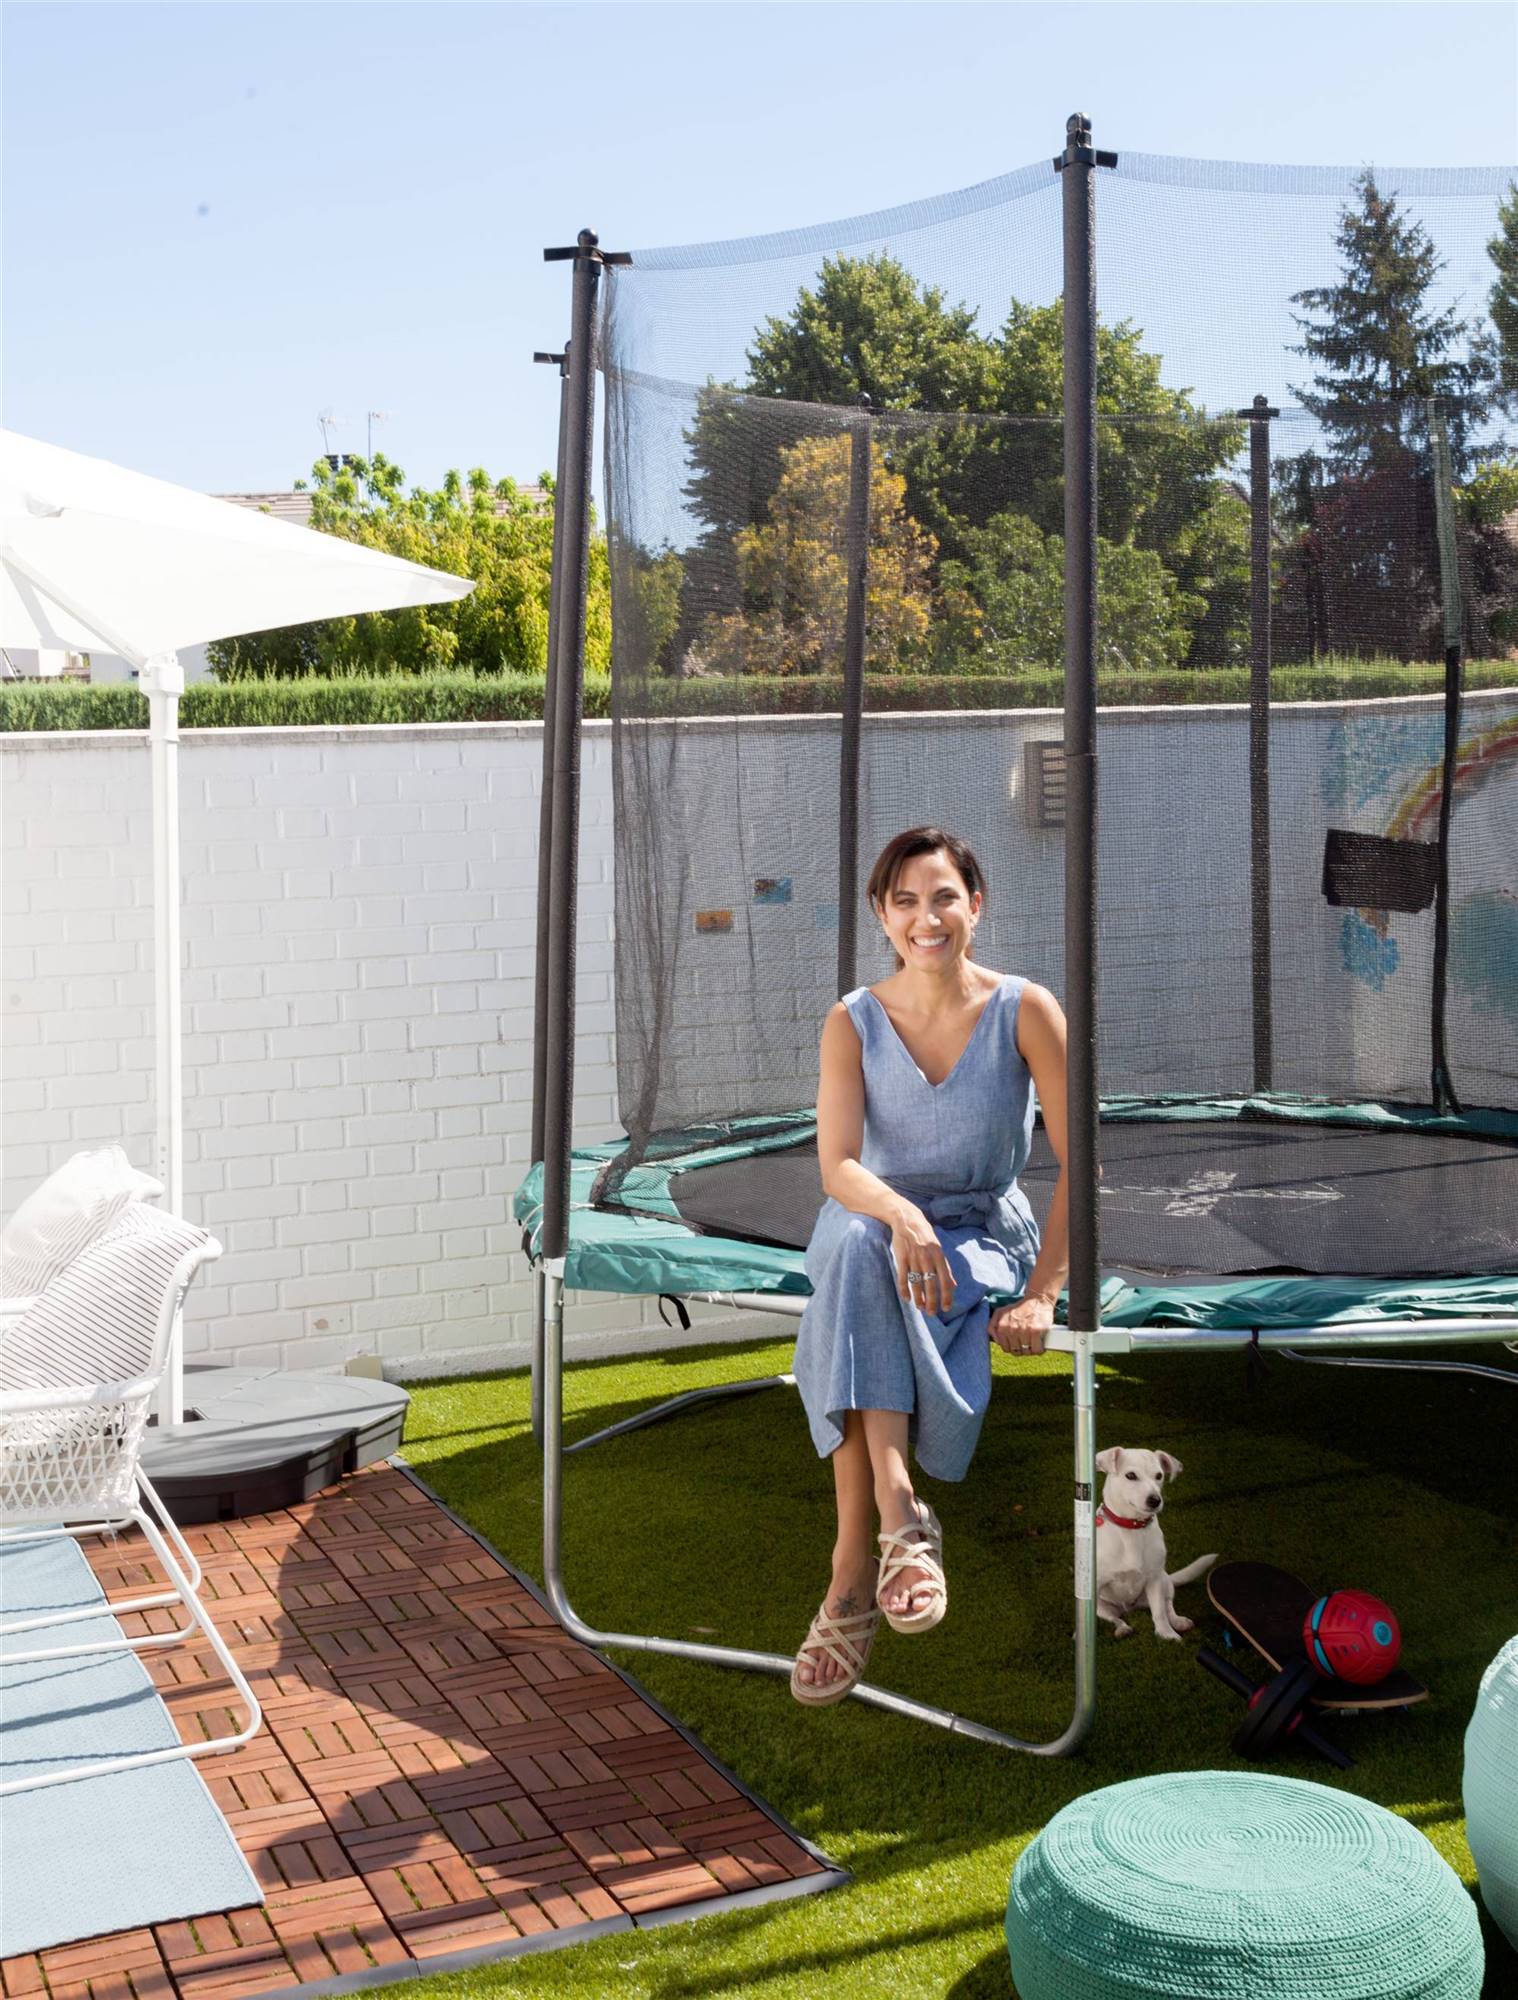 Terraza de Toni Acosta posando en la cama elástica de su hija junto a su perrita Amy.